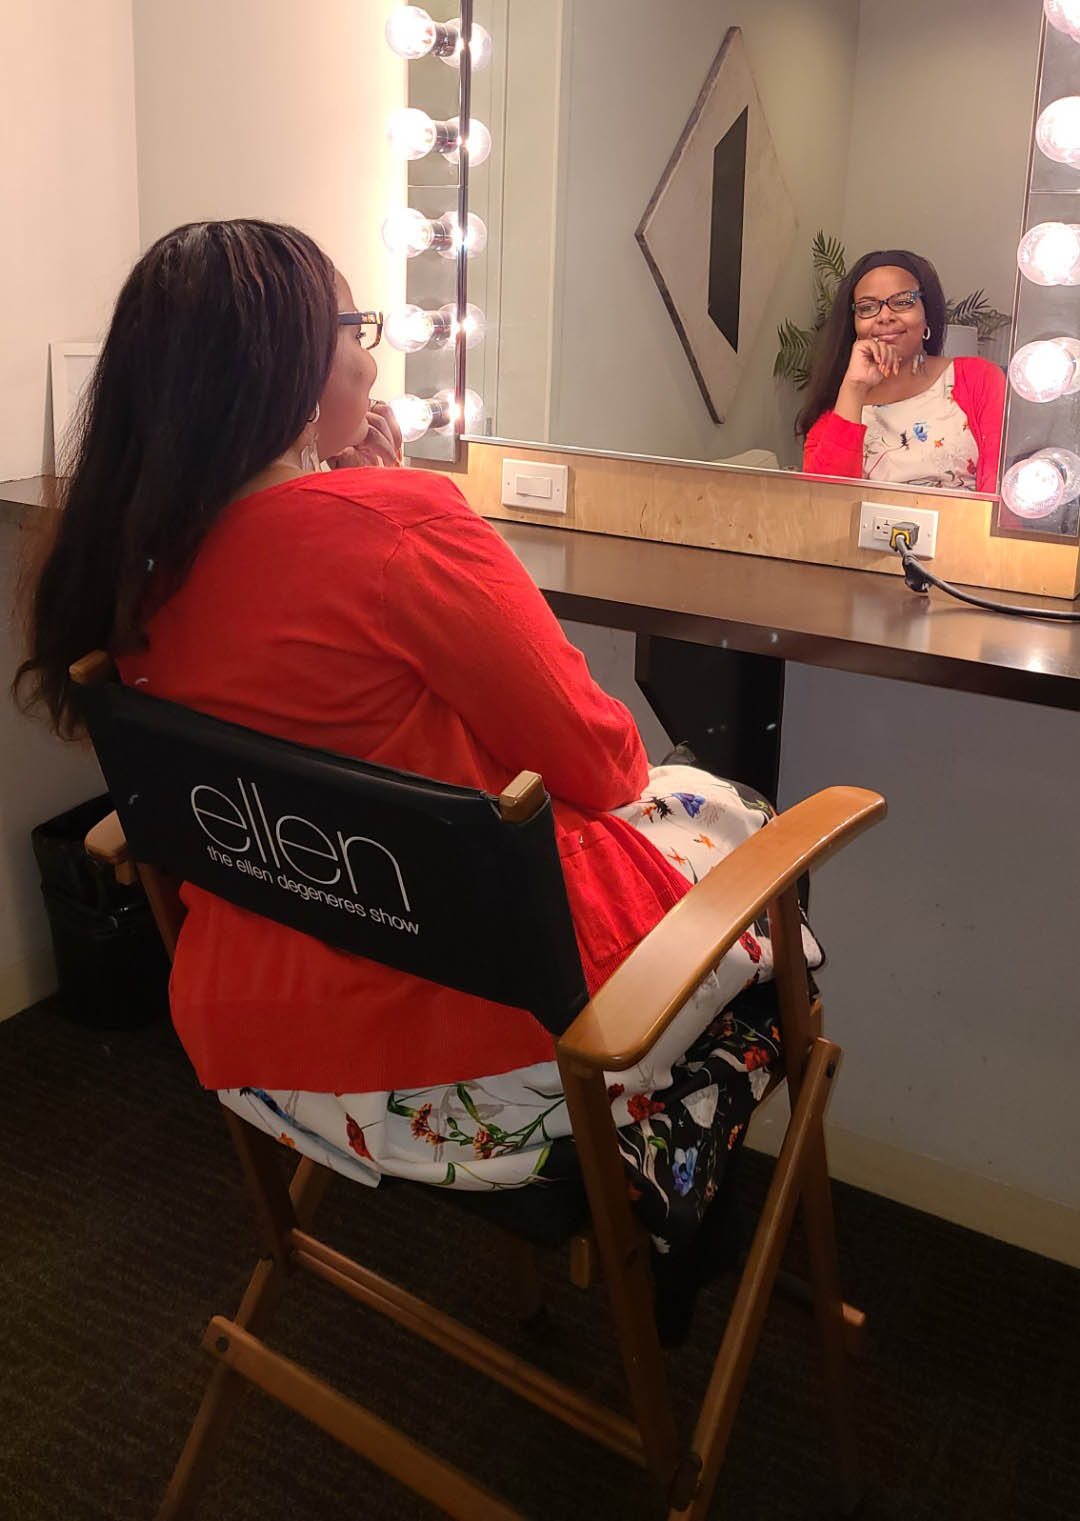 Reneisha S. Wilkes waits in the dressing room of the "Ellen DeGeneres Show."